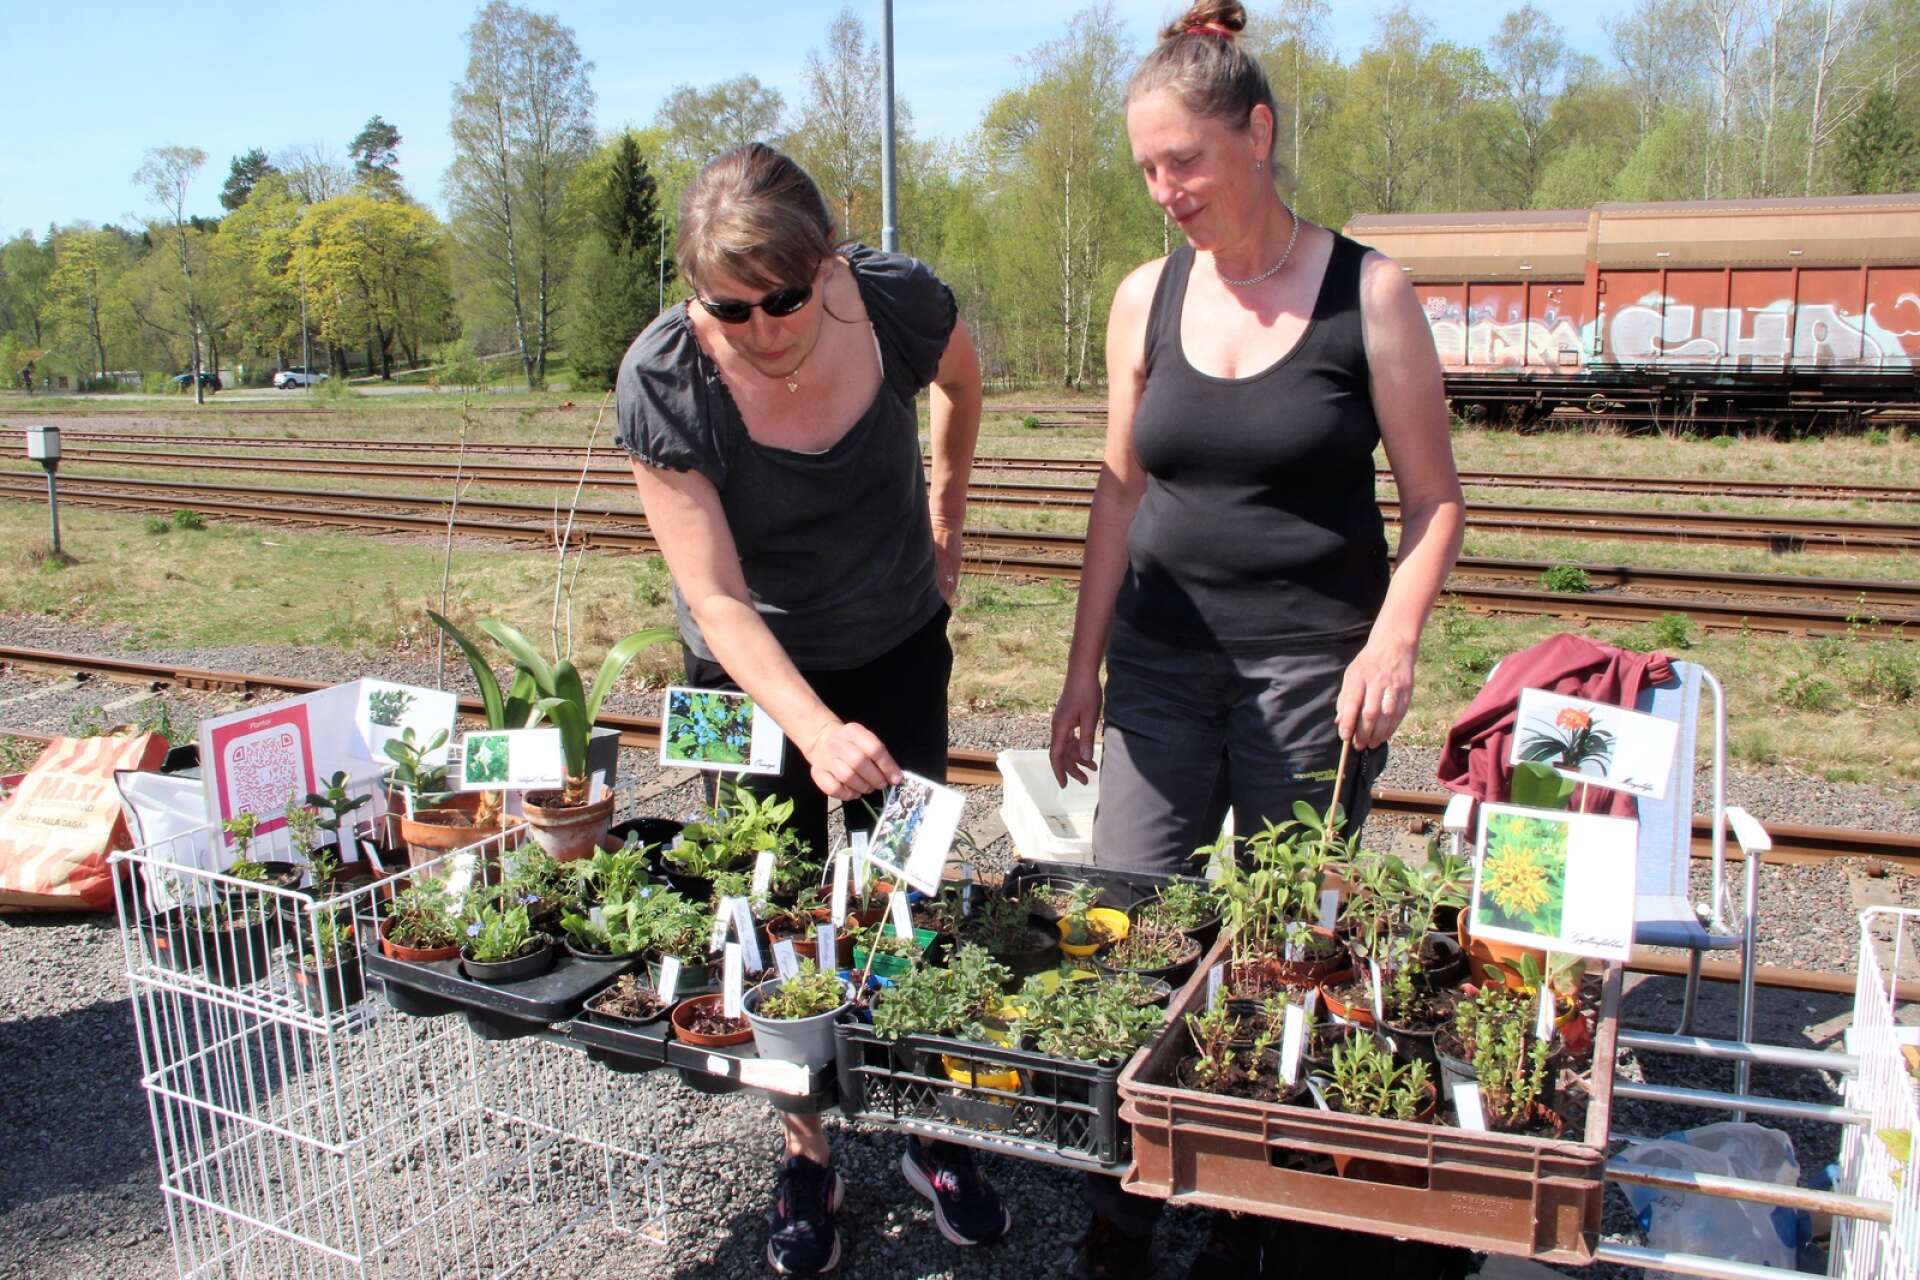 Systrarna Terése Riddersand och Yvette Josefsson sålde bra denna dag, inte minst tomatplantor och kryddväxter.